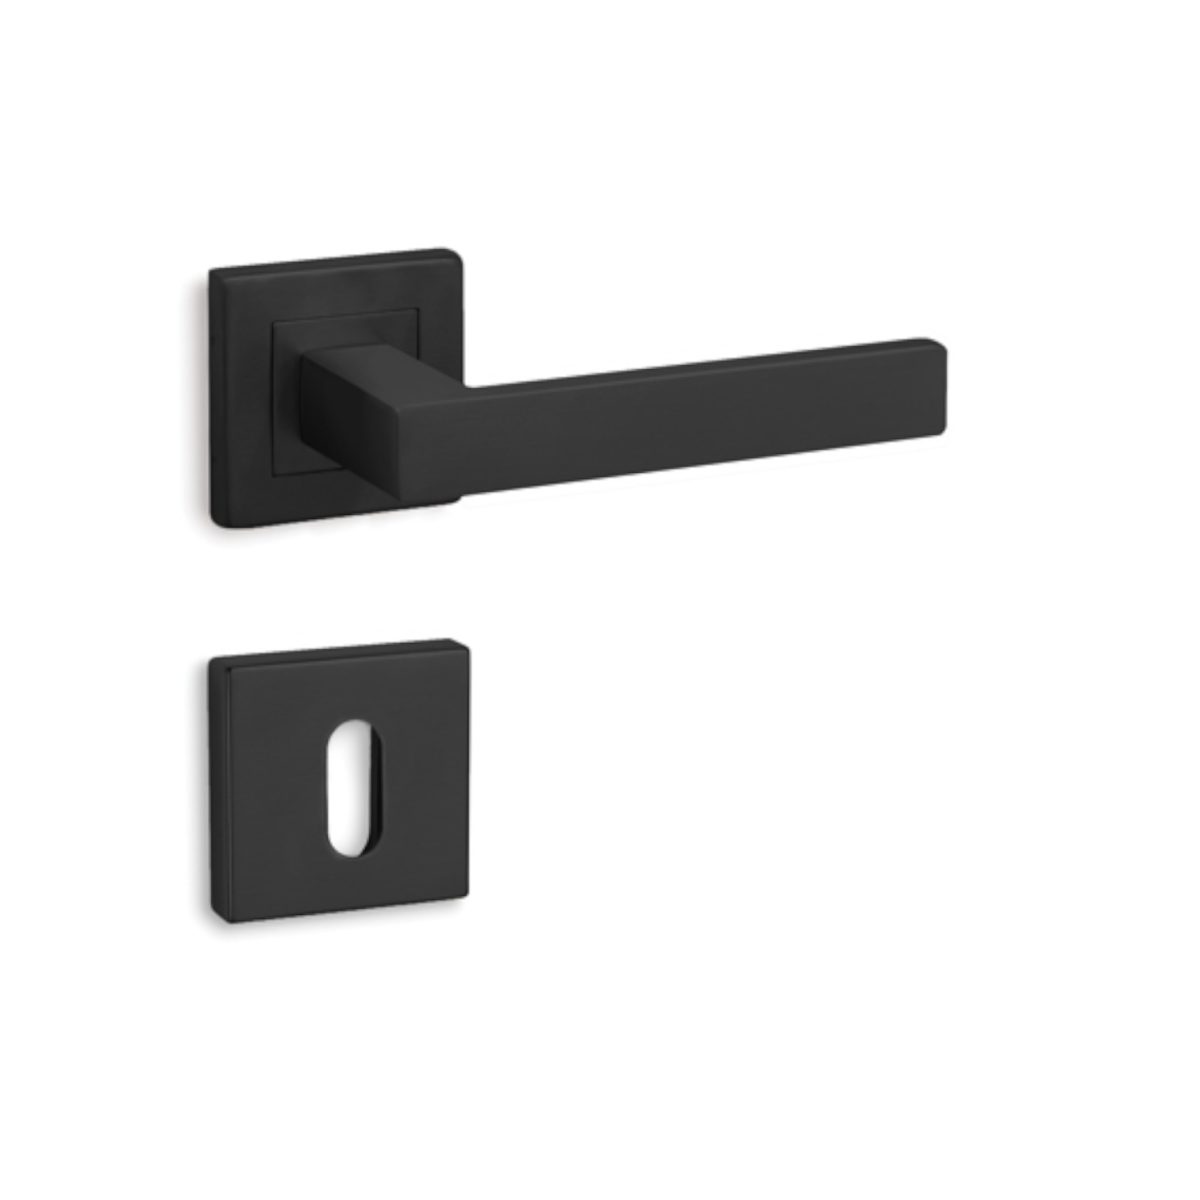 Πόμολο Πόρτας Conset C875 Μαύρο Ματ 150×50